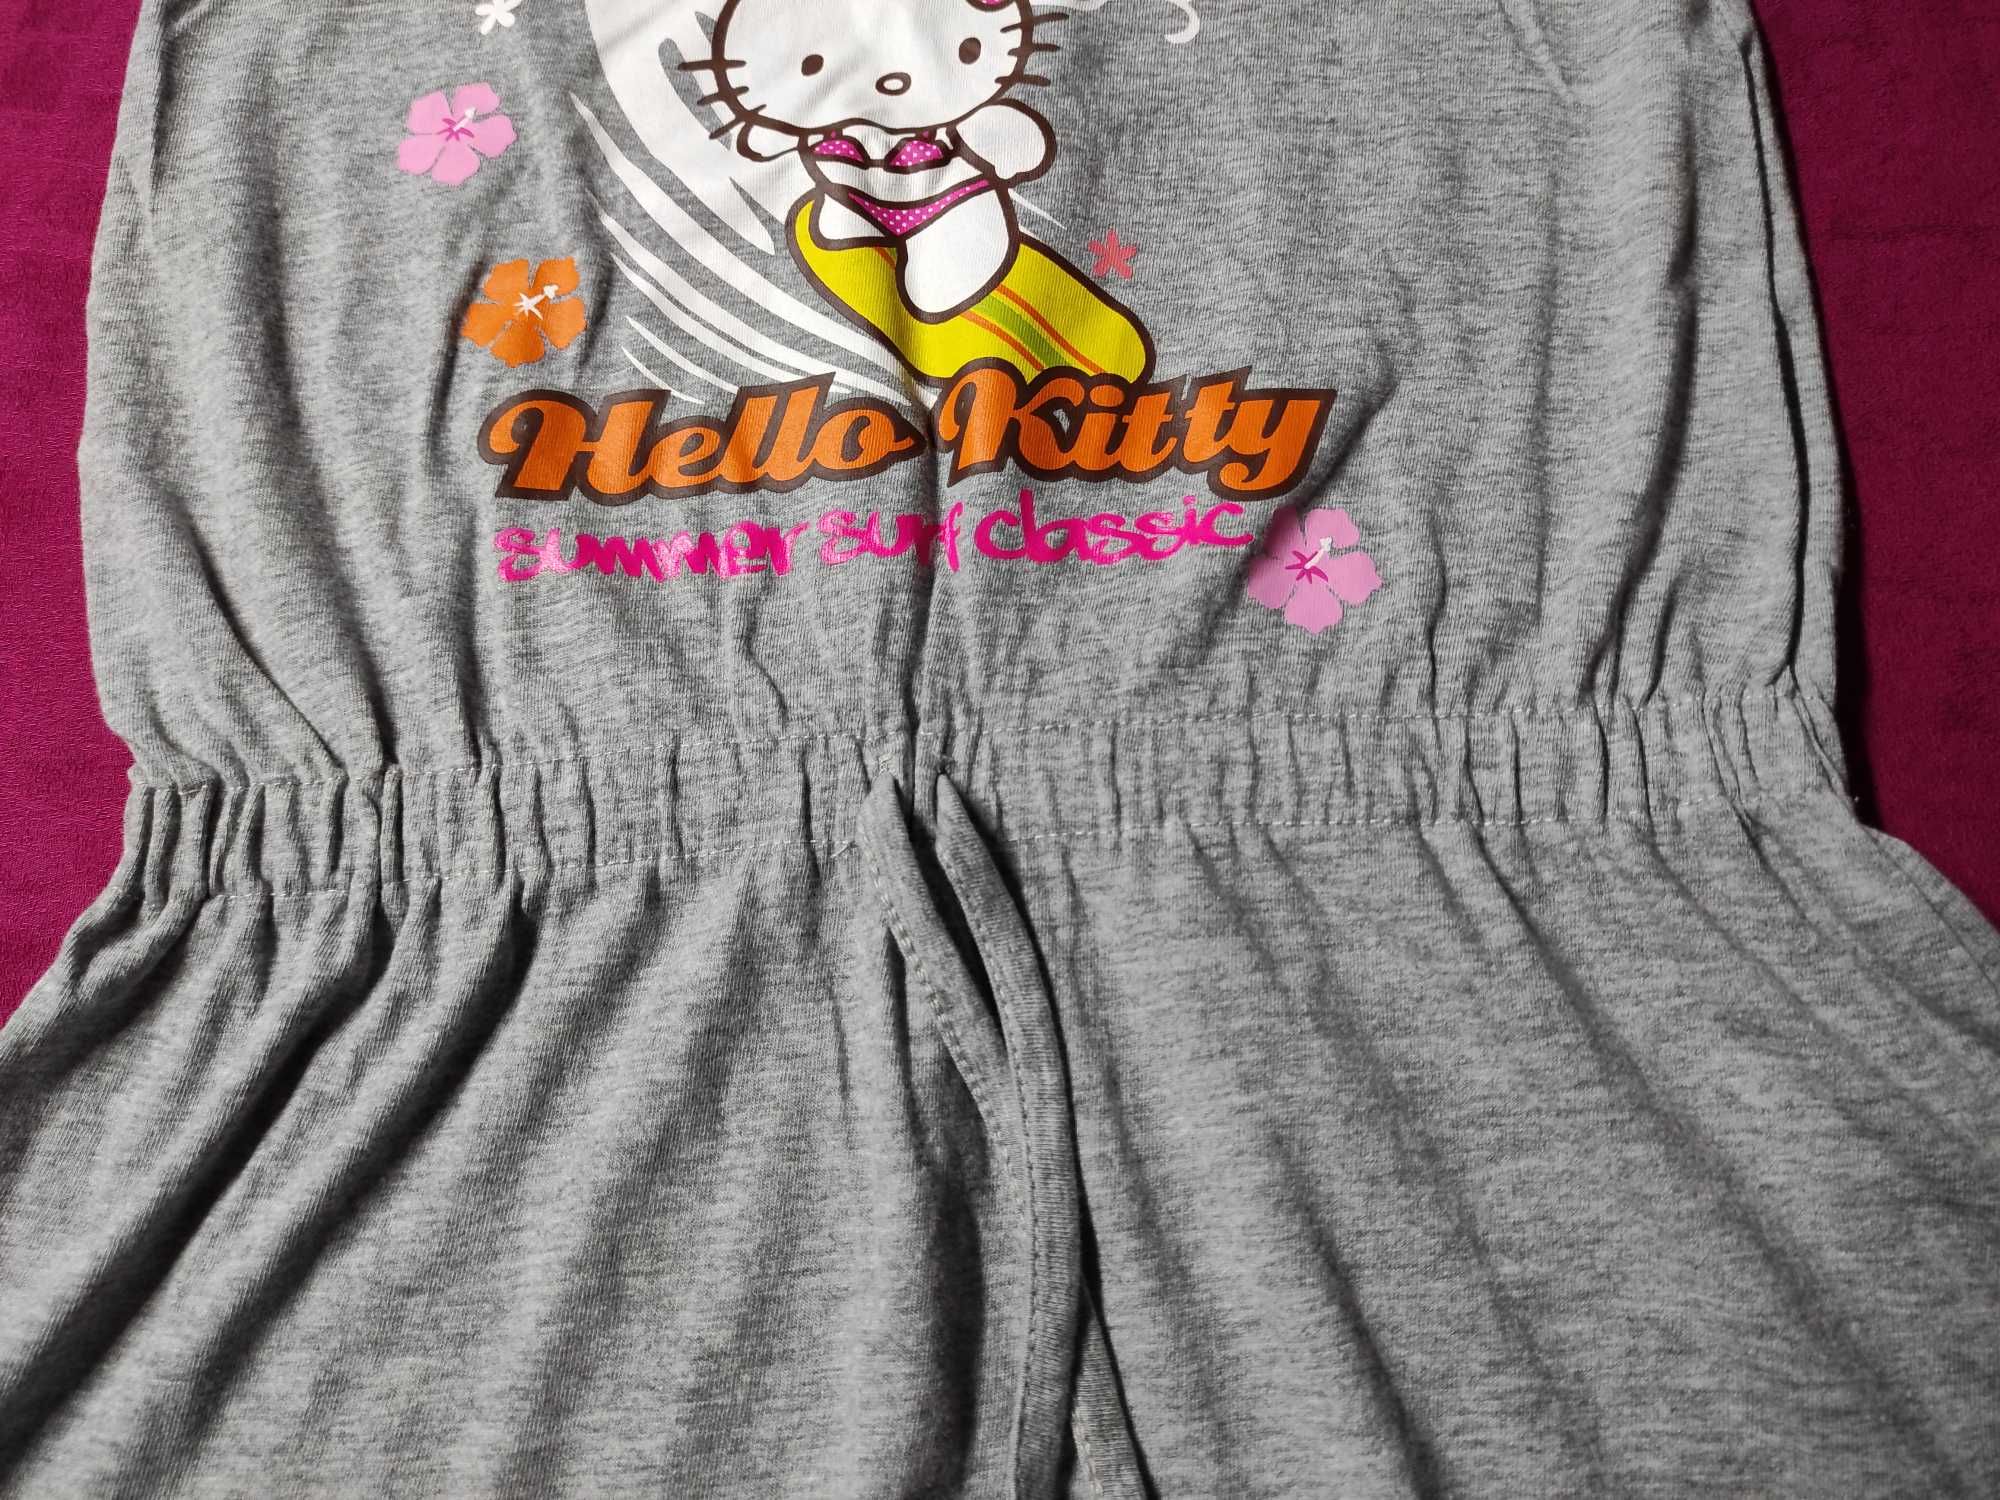 Vestido de praia Hello Kitty cinza tamanho 7/8 anos marca Sanrio